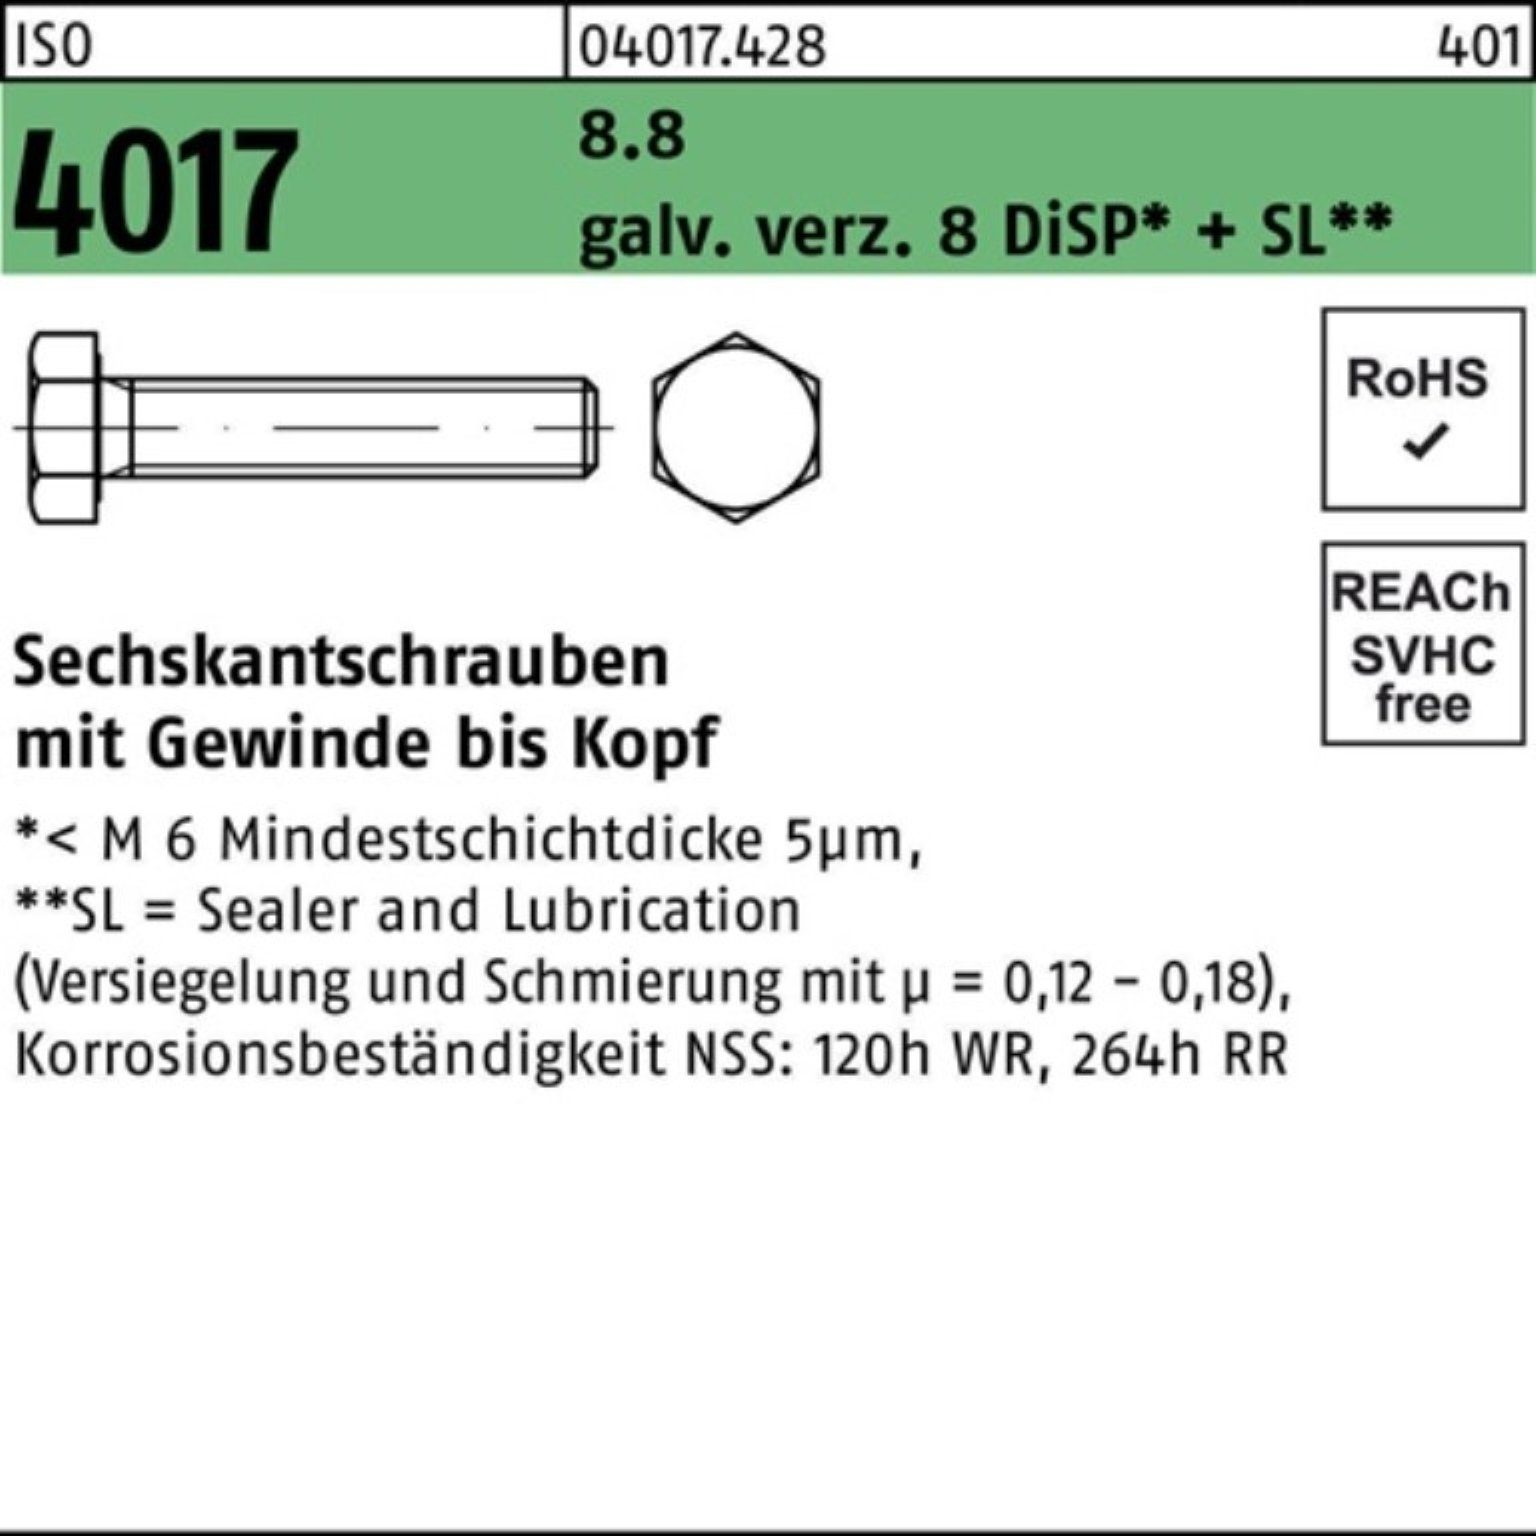 Bufab Sechskantschraube 100er 40 galv.verz. M14x Pack 8.8 VG 4017 8 DiSP Sechskantschraube ISO